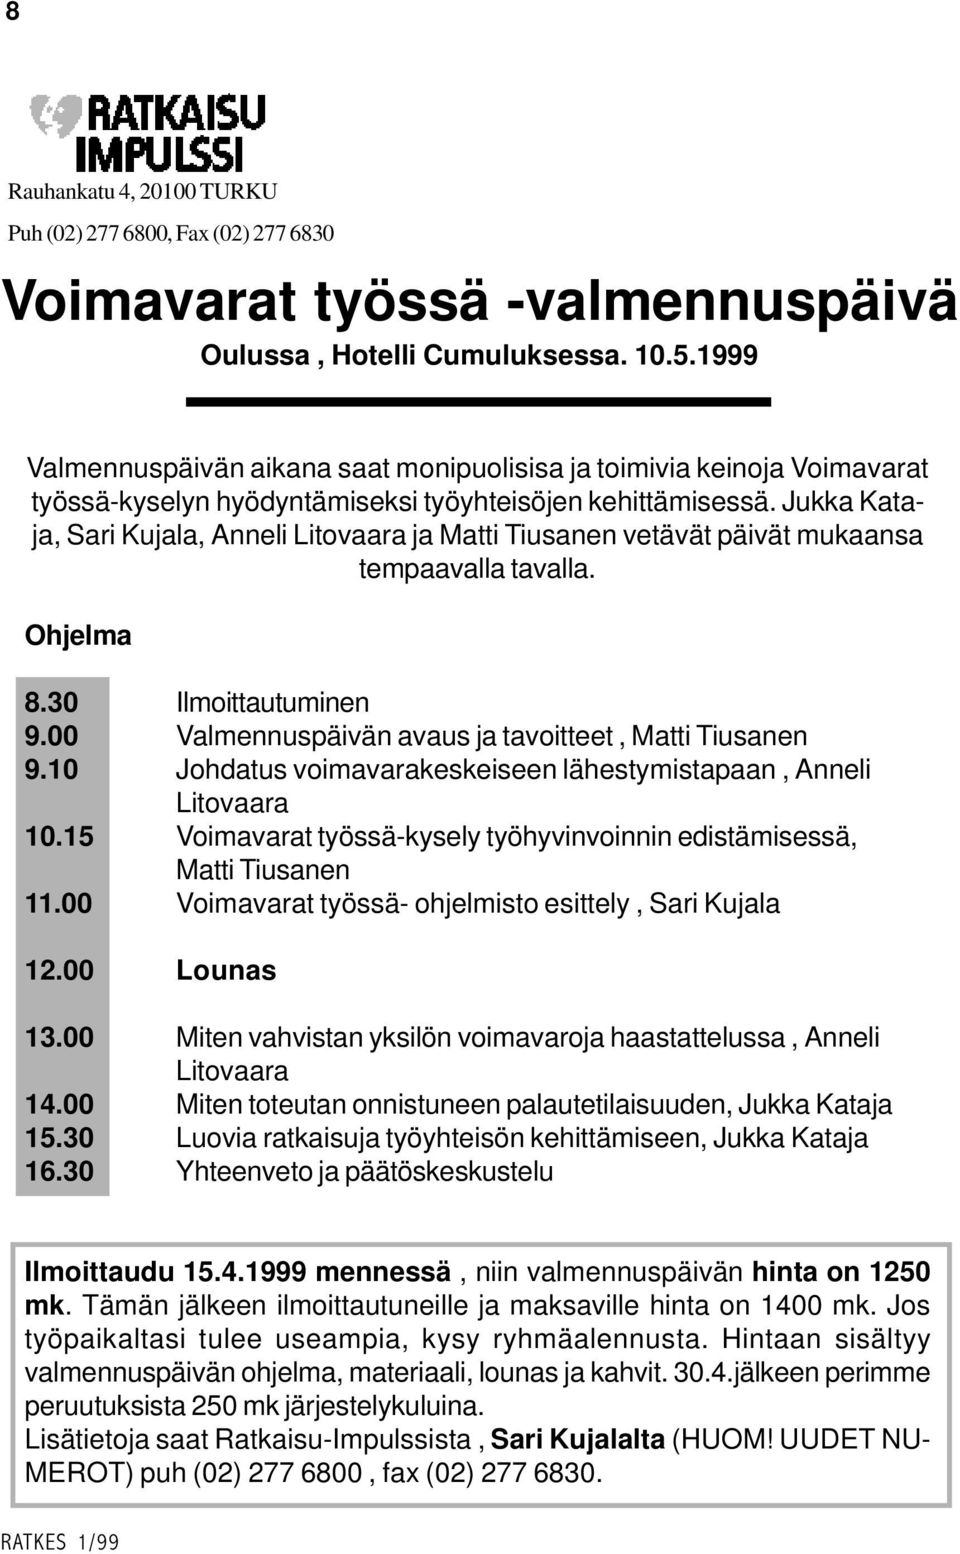 Jukka Kataja, Sari Kujala, Anneli Litovaara ja Matti Tiusanen vetävät päivät mukaansa tempaavalla tavalla. Ohjelma 8.30 Ilmoittautuminen 9.00 Valmennuspäivän avaus ja tavoitteet, Matti Tiusanen 9.